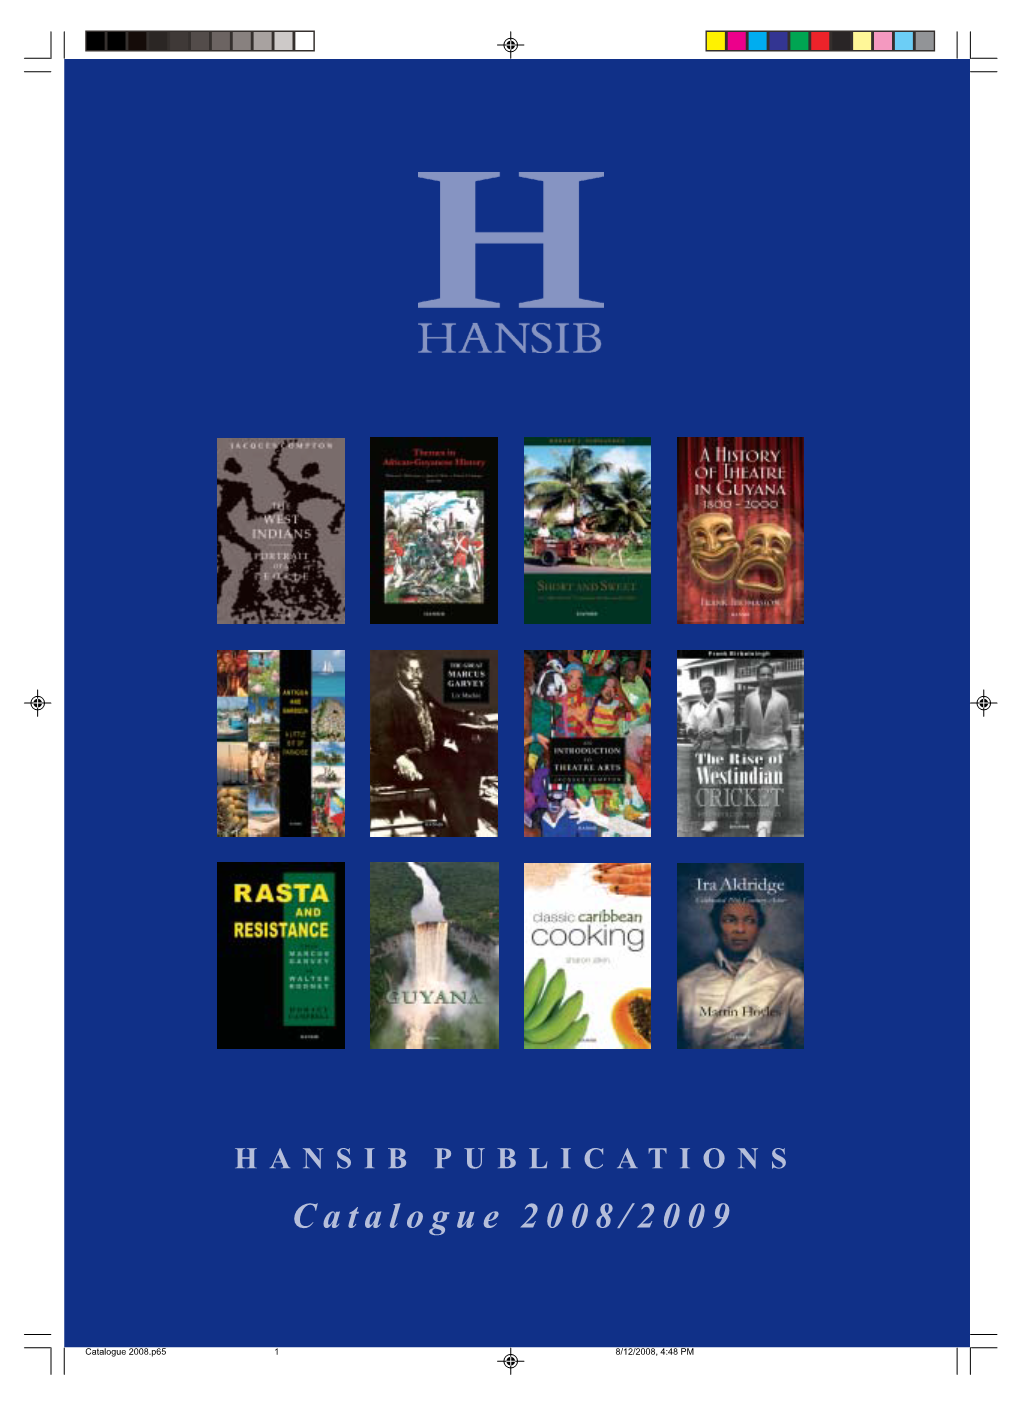 HANSIB PUBLICATIONS Catalogue 2008/2009